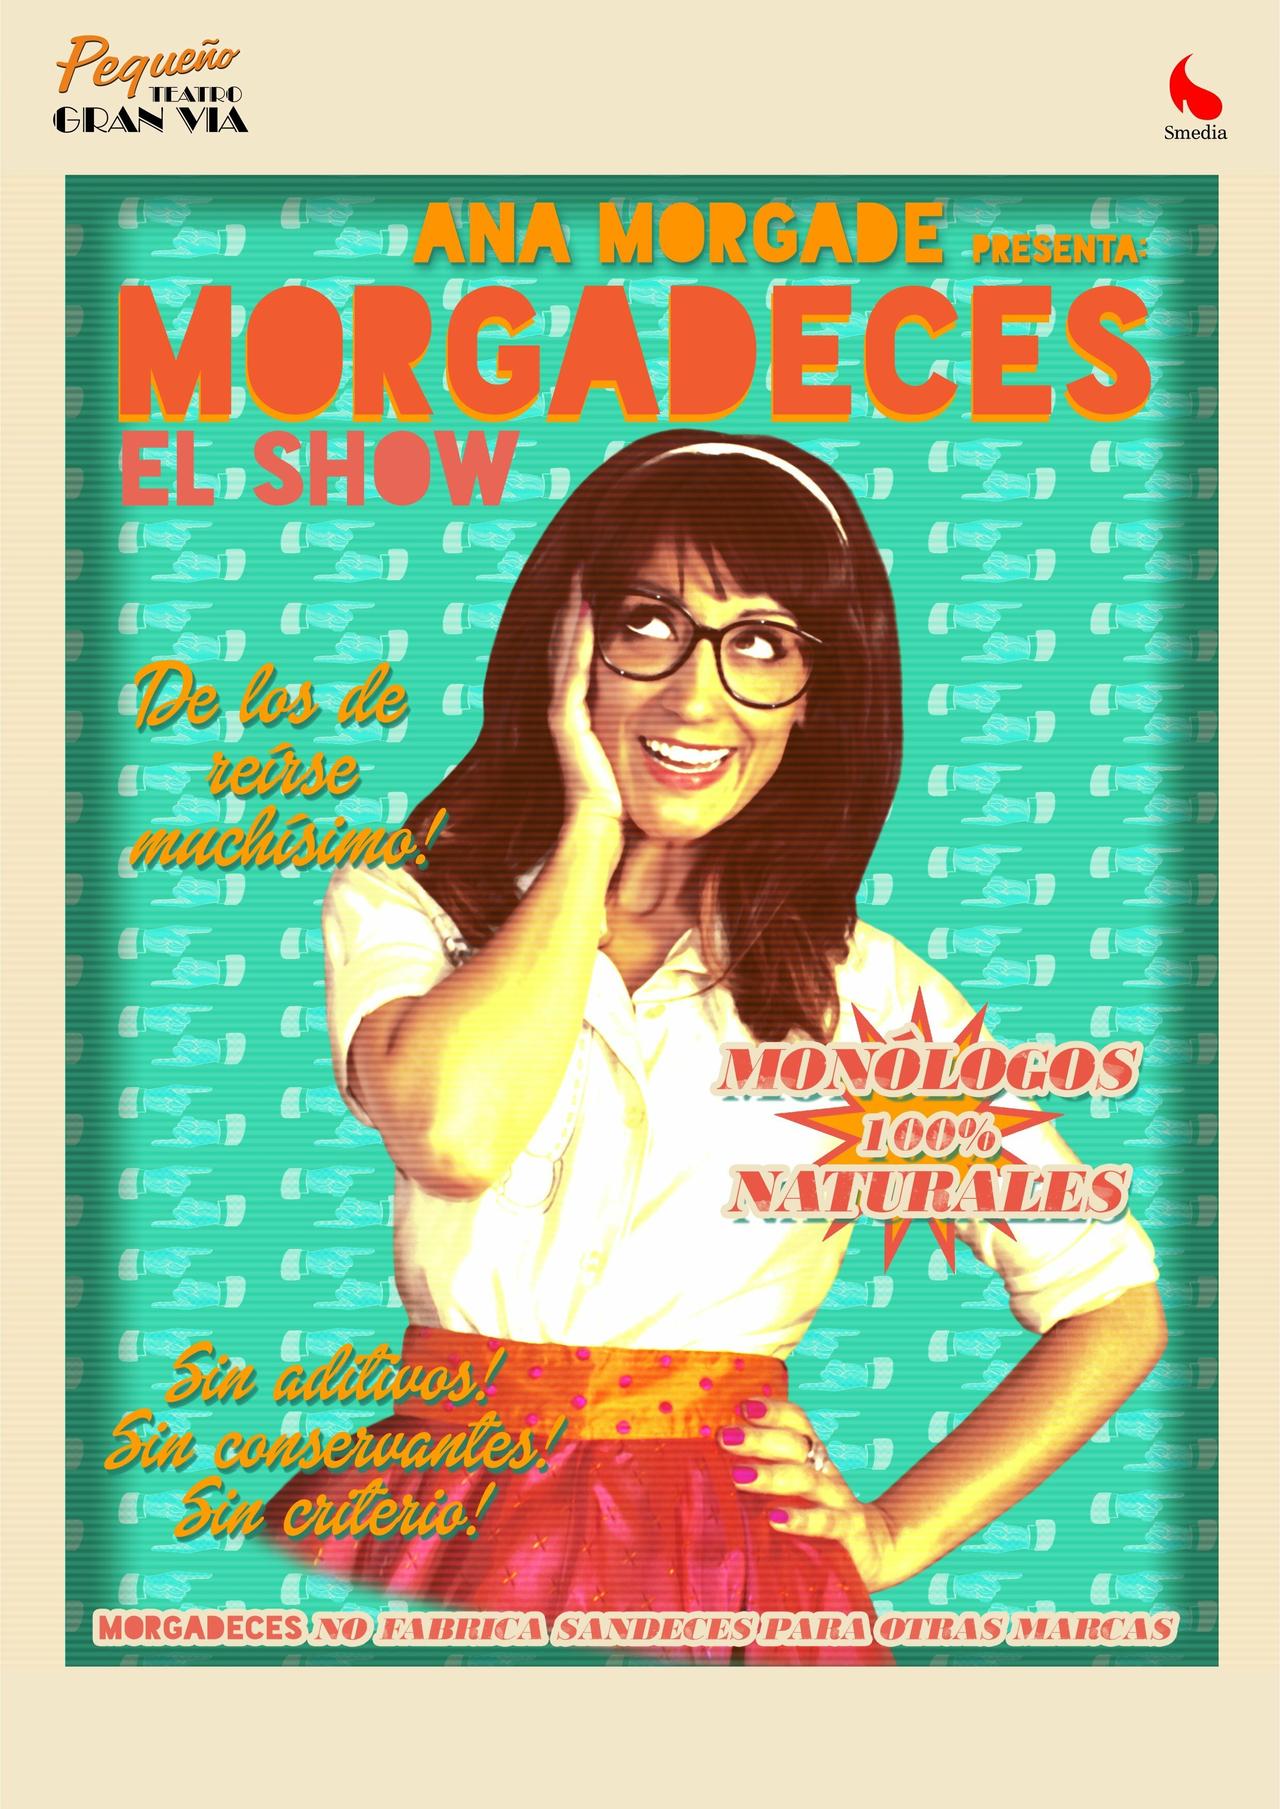 Ana Morgade - Morgadeces